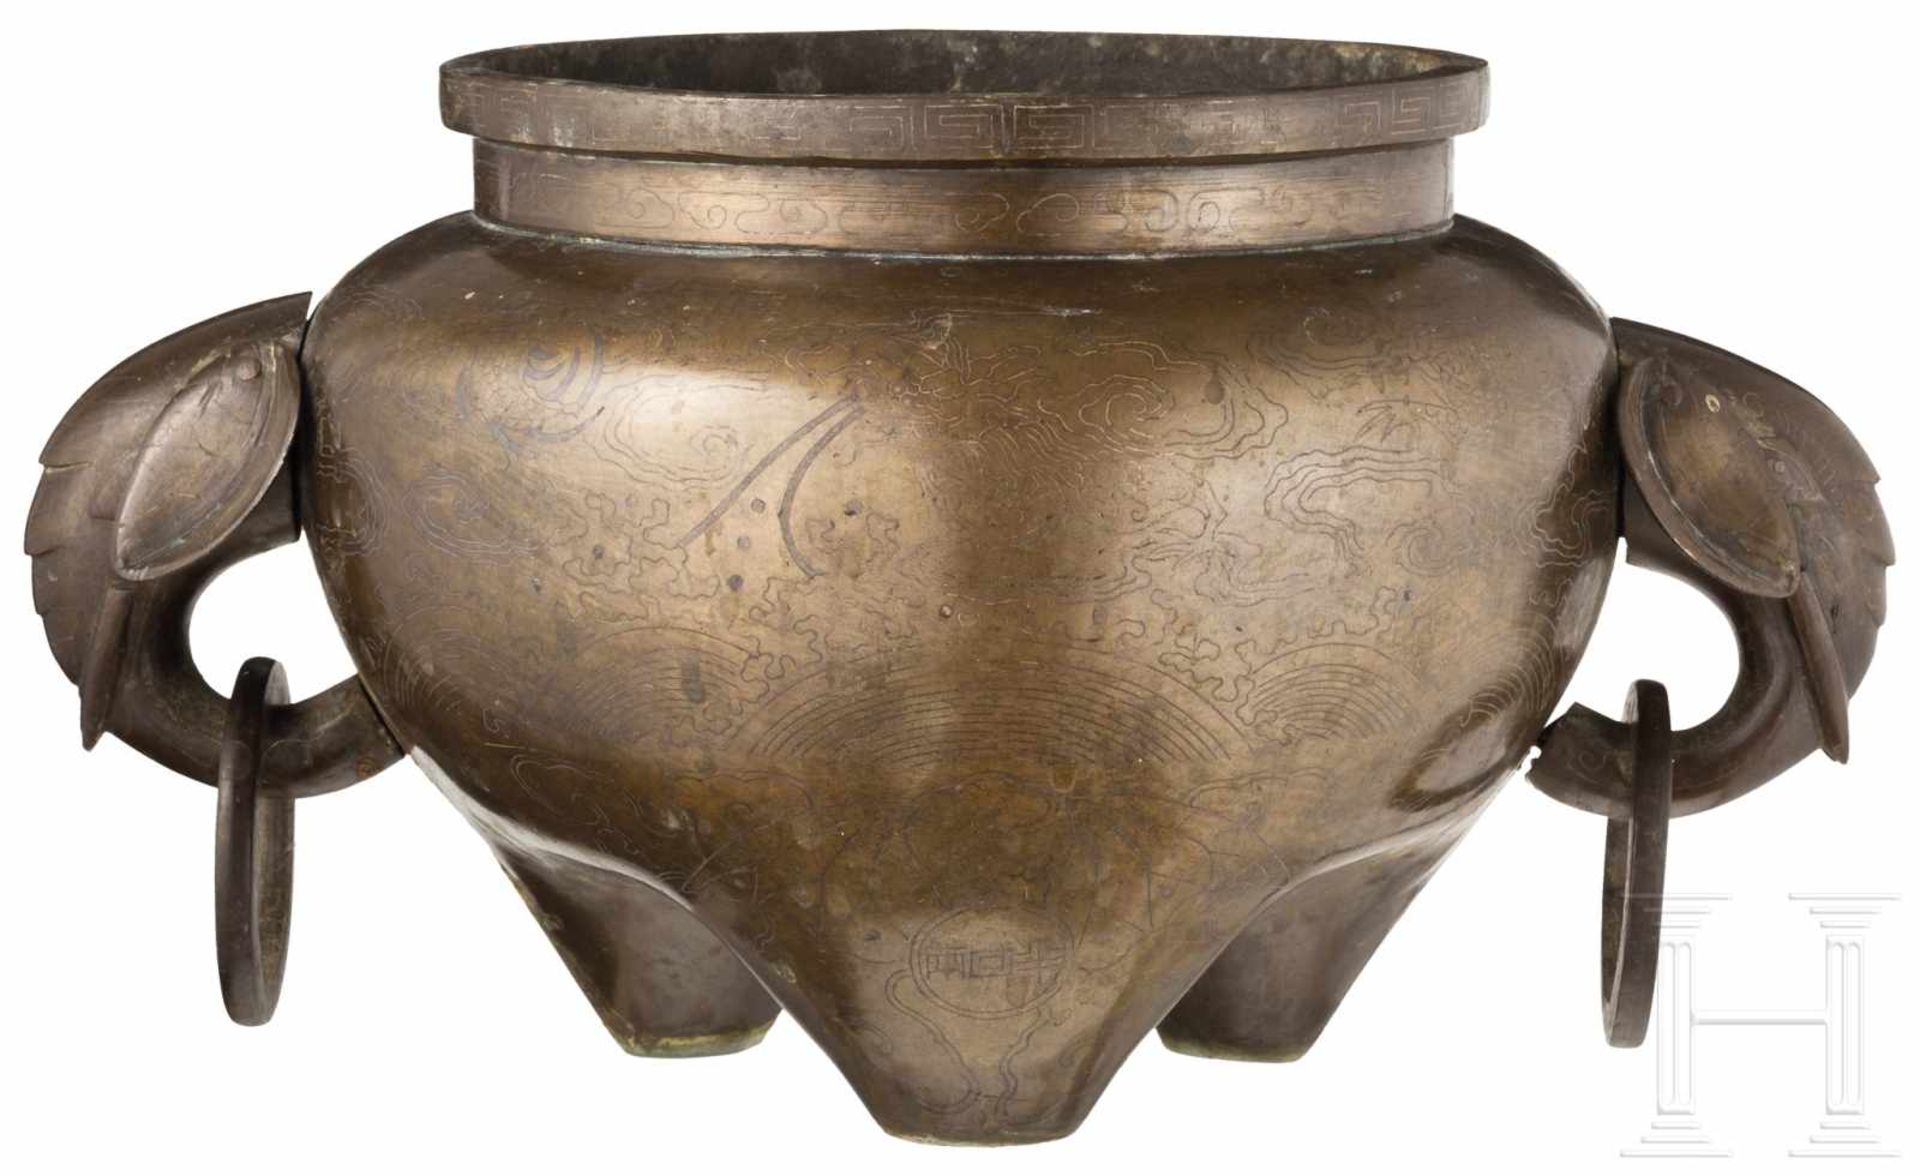 Bronzegefäß mit Silbereinlagen, China, 19. Jhdt.Bulbous vessel resting on three short legs. Indented